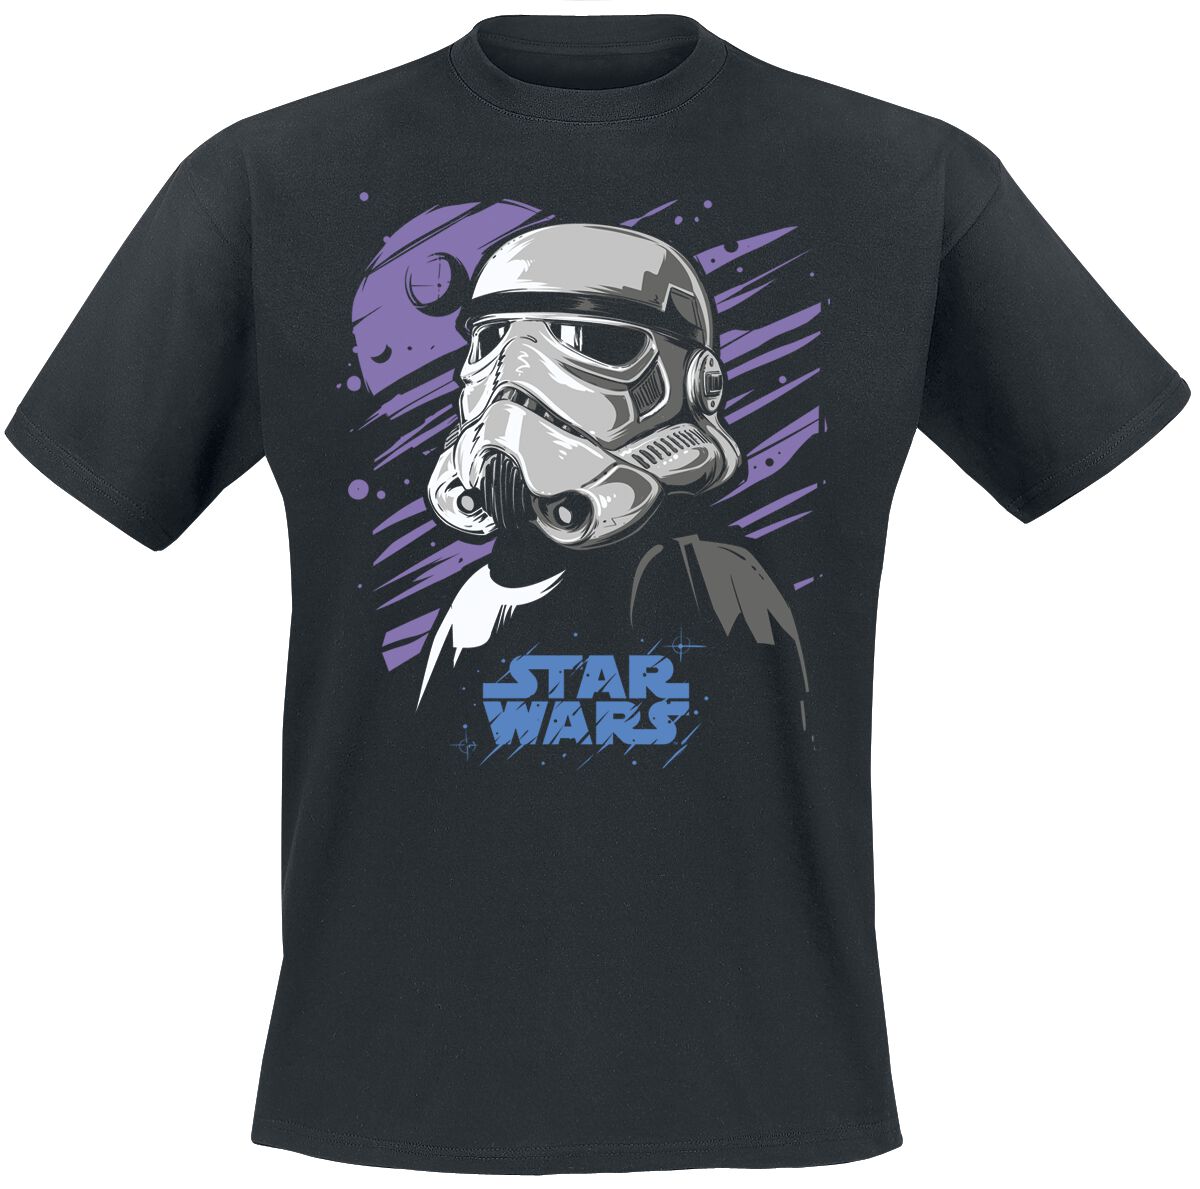 Star Wars T-Shirt - Galaxy Stormtrooper - M bis 5XL - für Männer - Größe M - schwarz  - Lizenzierter Fanartikel